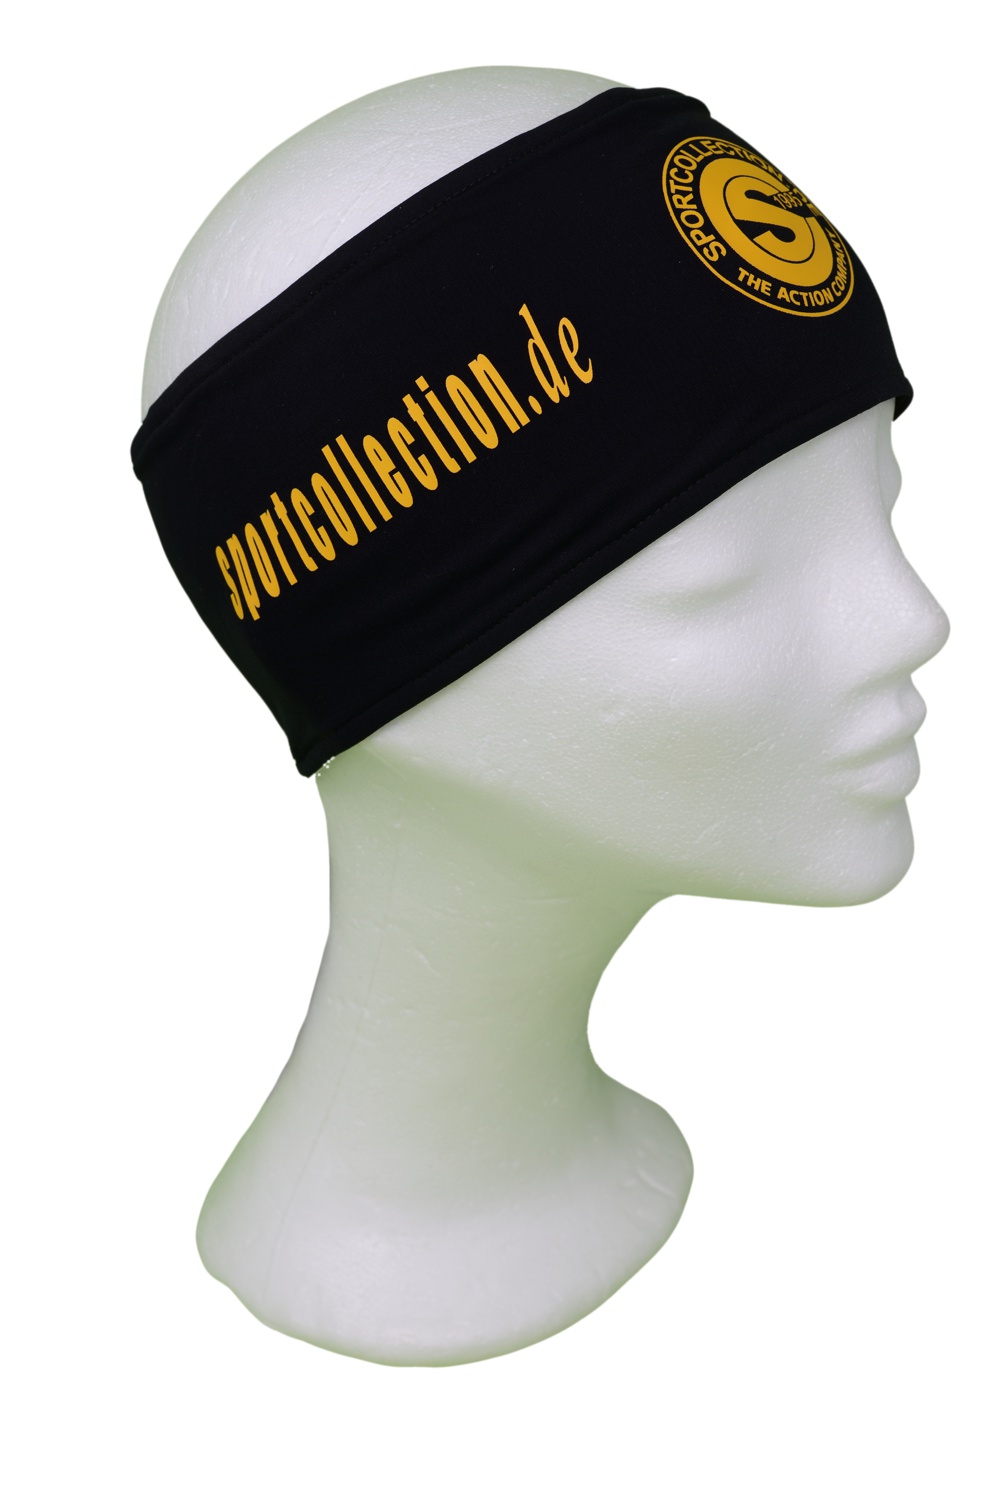 Stöhr Stirnband Schwarz-Gelb-Logo-Text